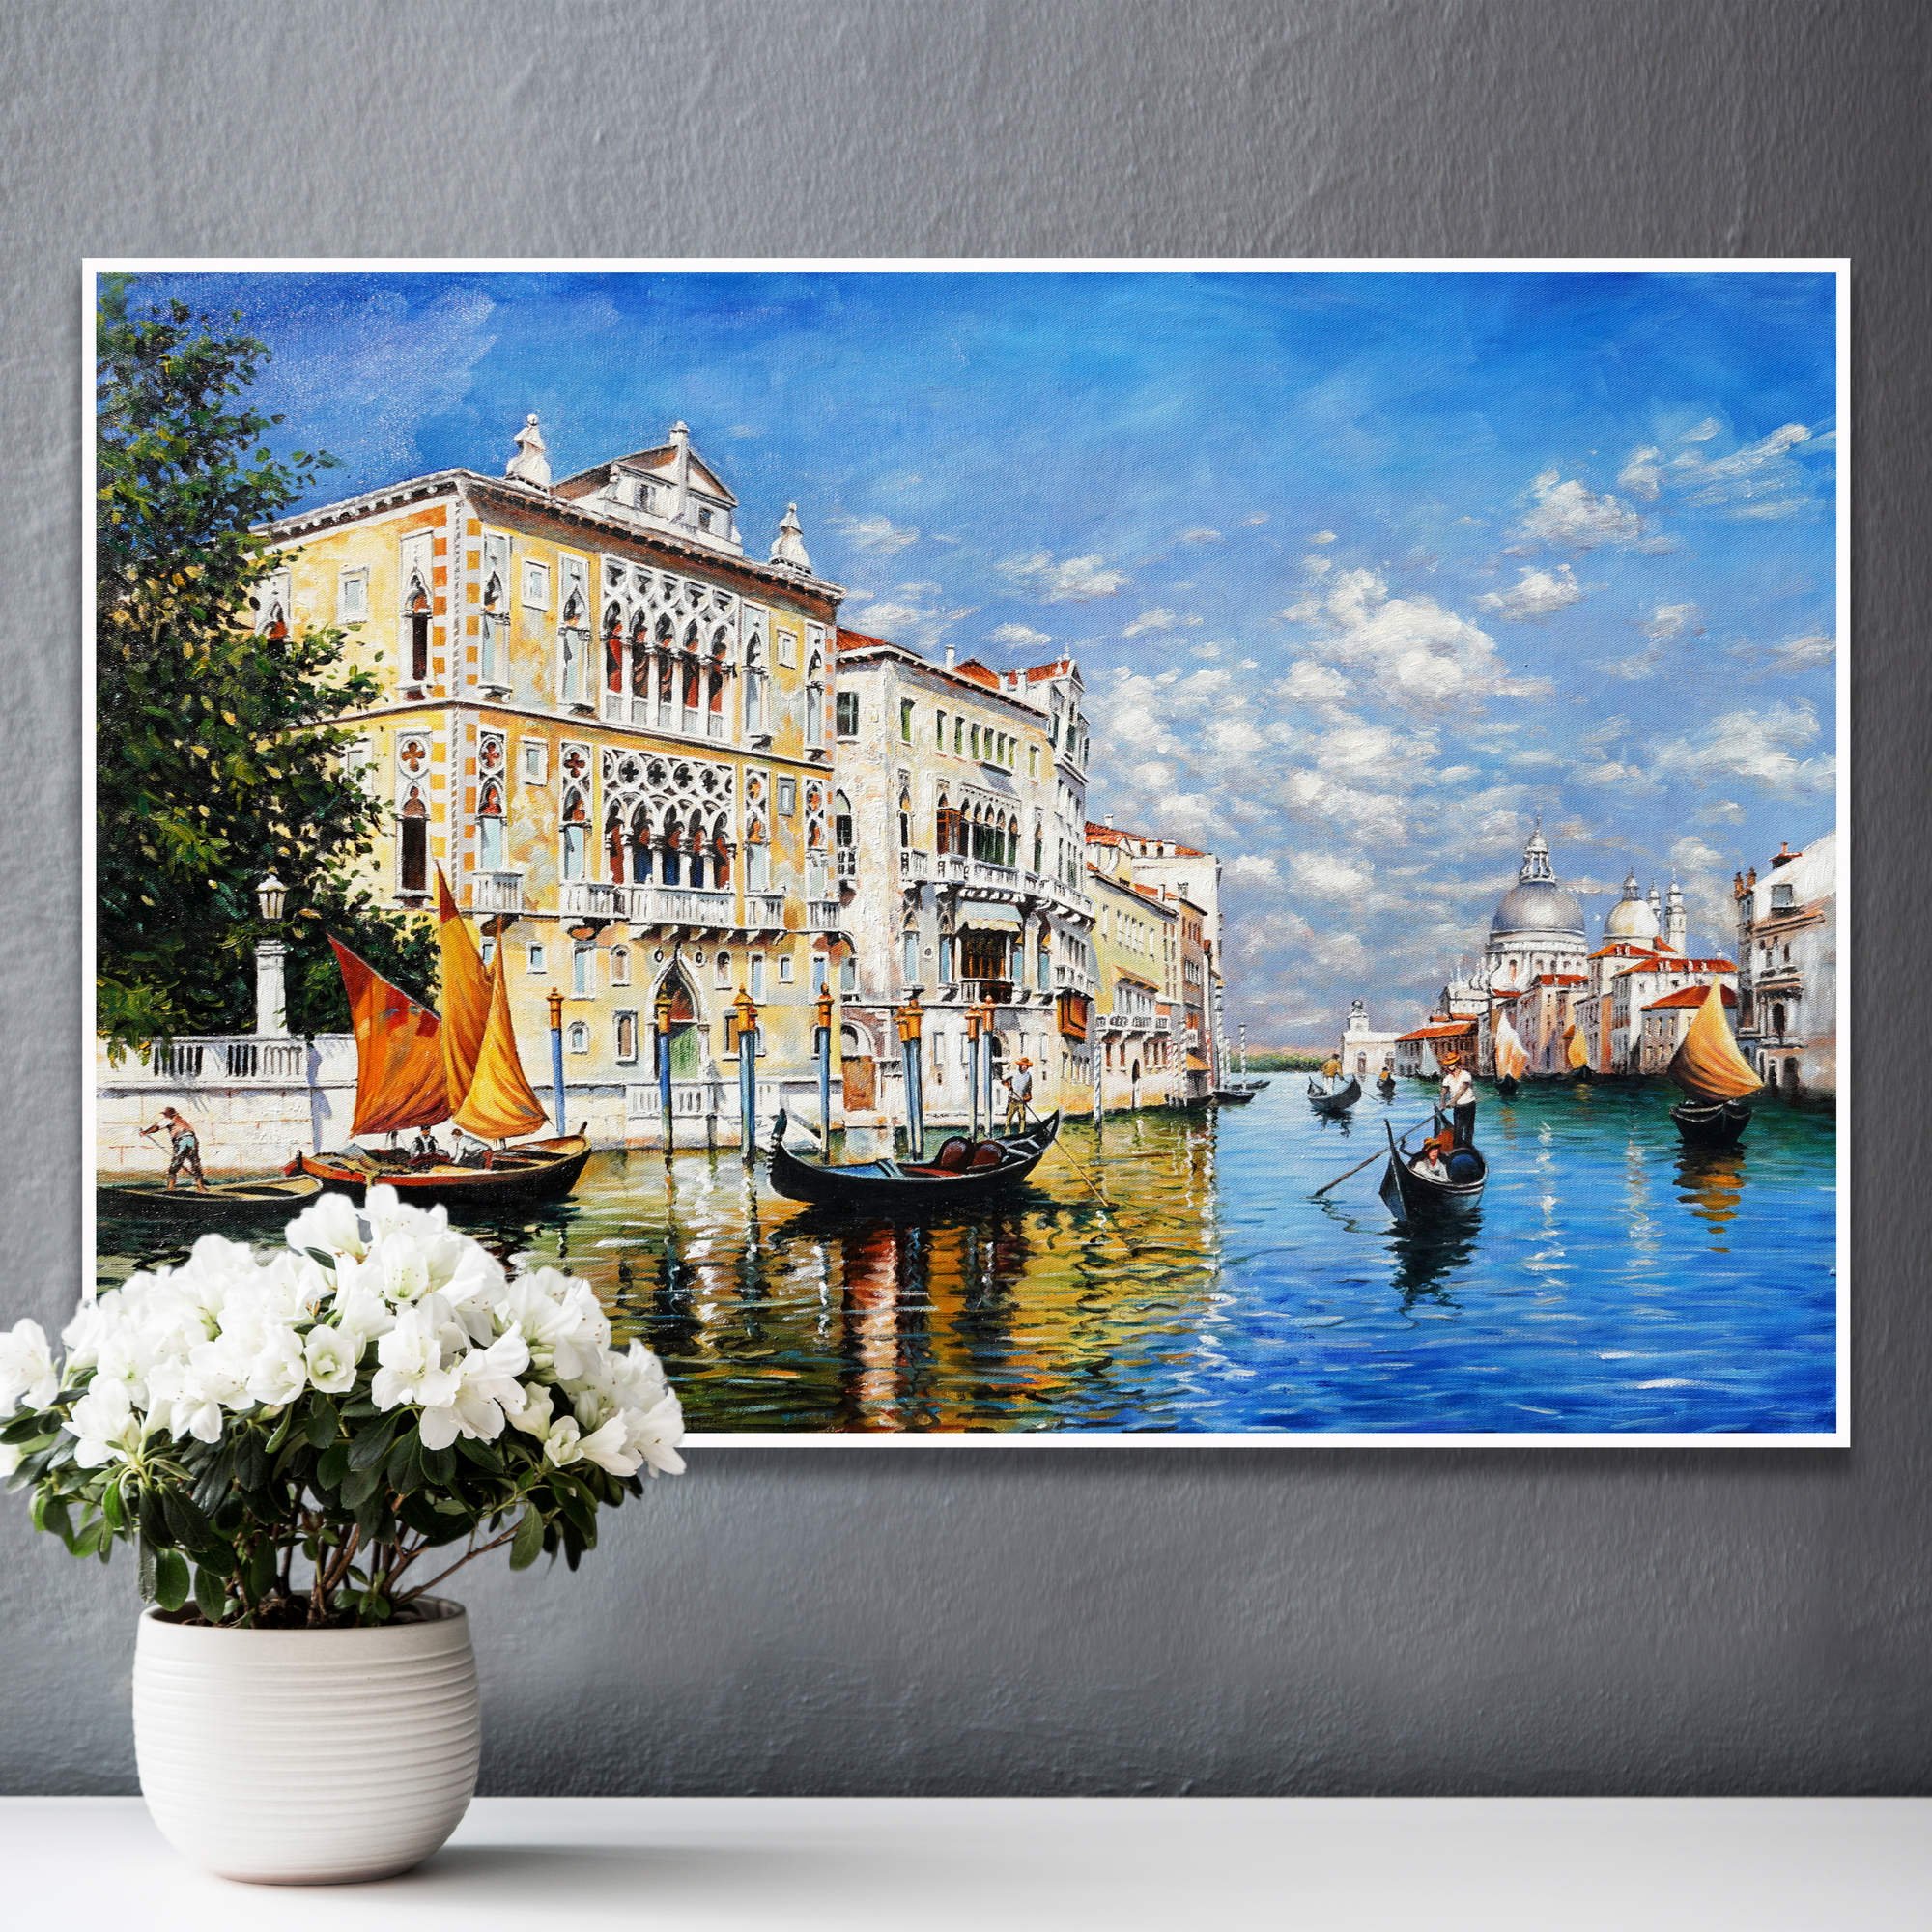 Dipinto di canale veneziano con edifici storici e gondole